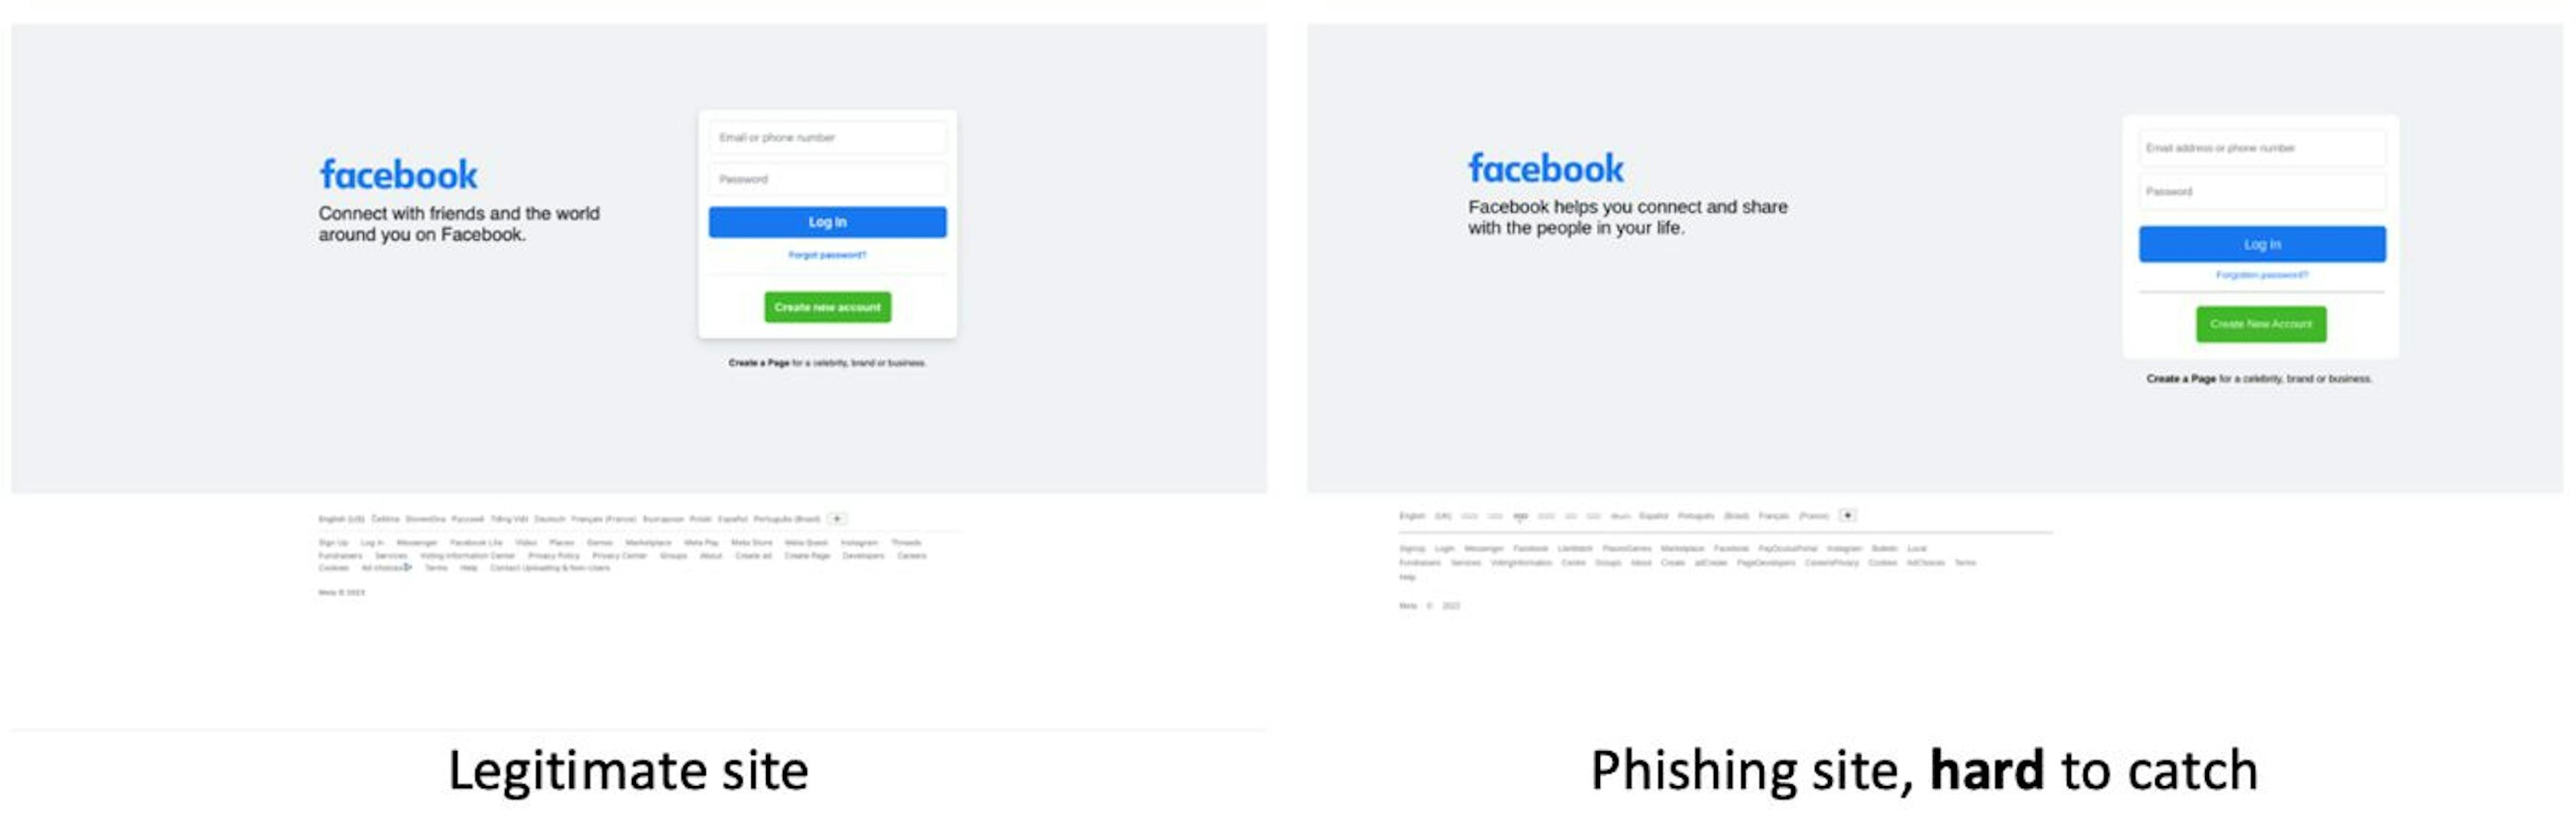 Legitimate vs Phishing Site